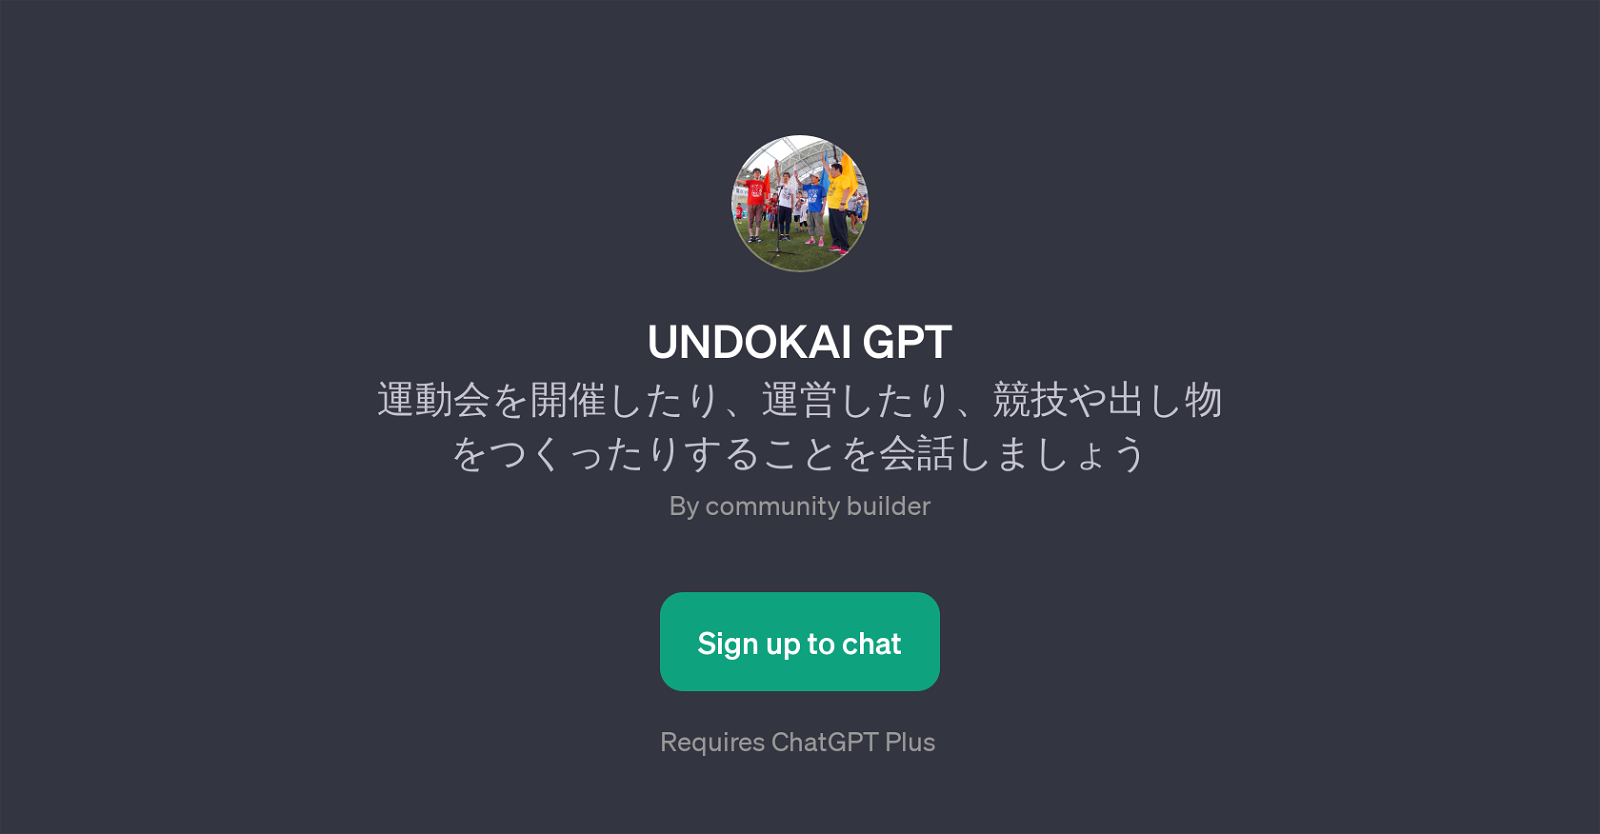 UNDOKAI GPT website